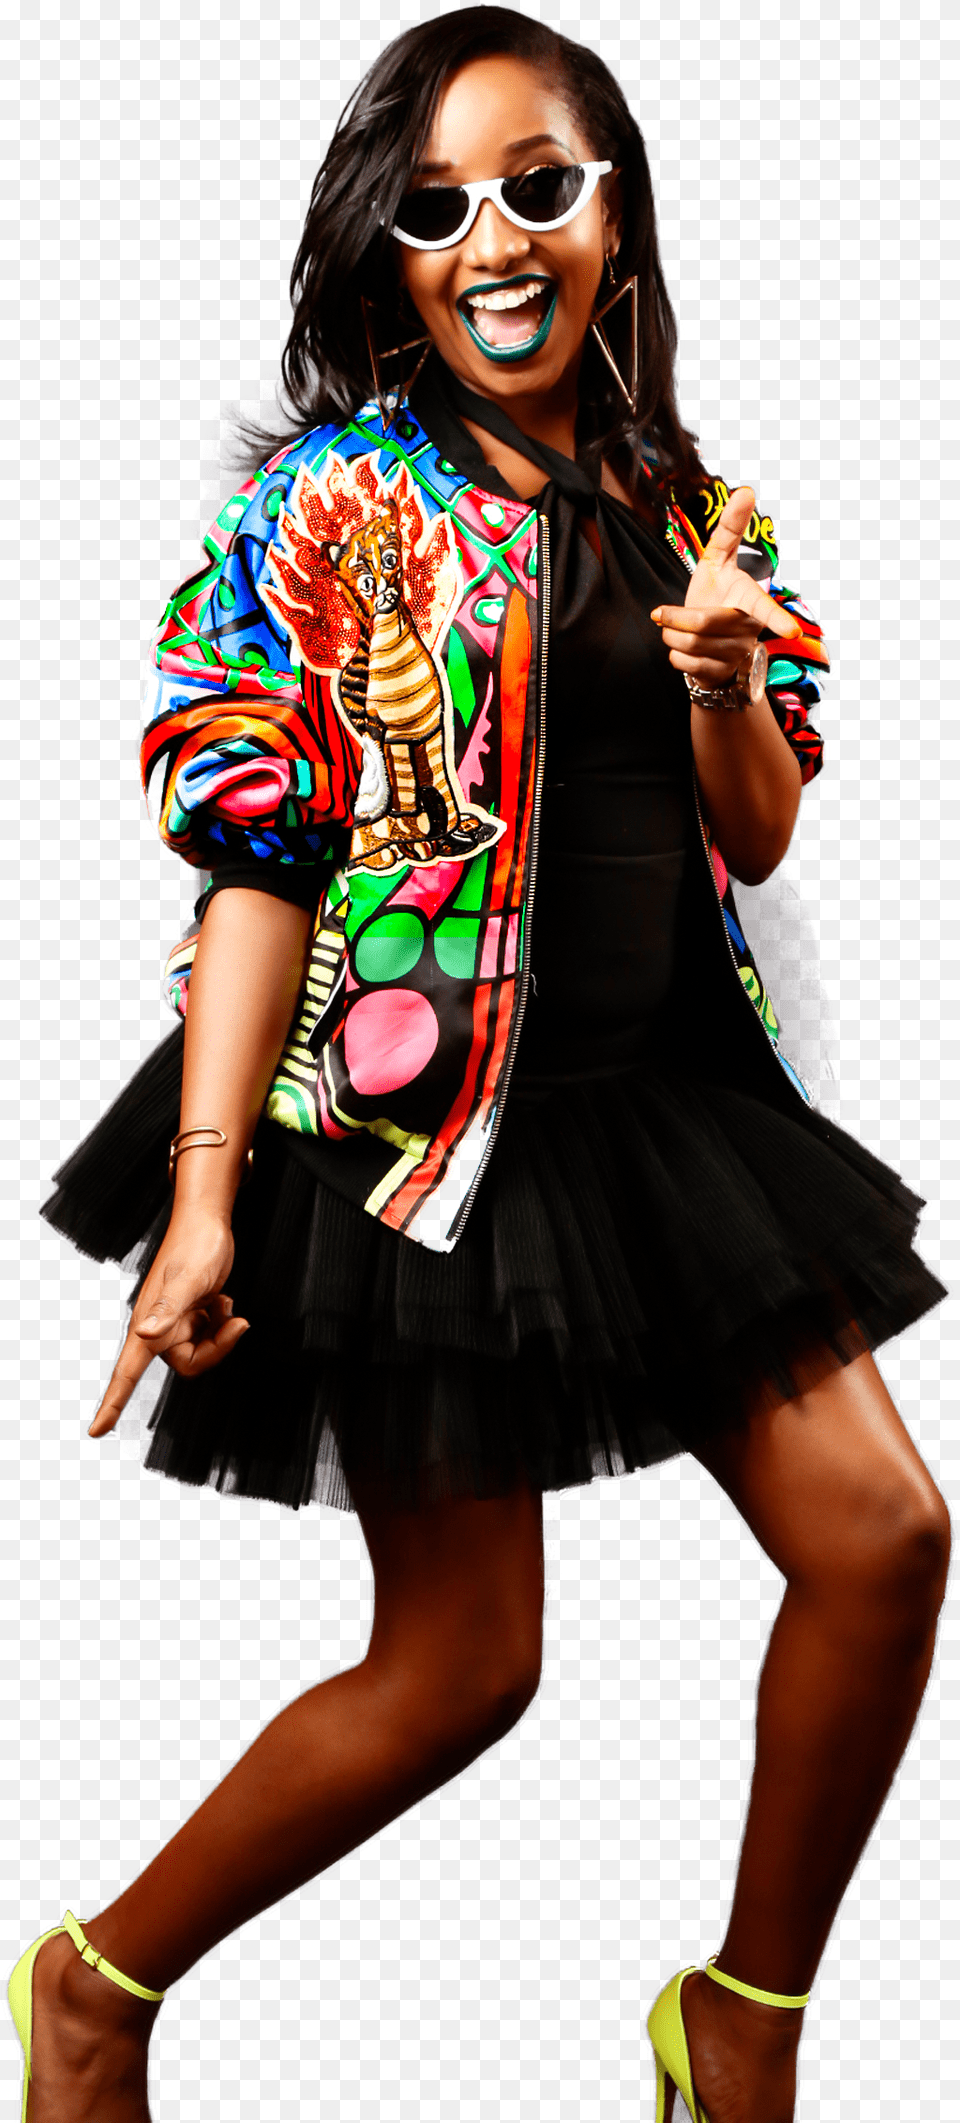 Nderu Biography Imagenes Of Anita Nderu, Adult, Woman, Smile, Person Free Png Download